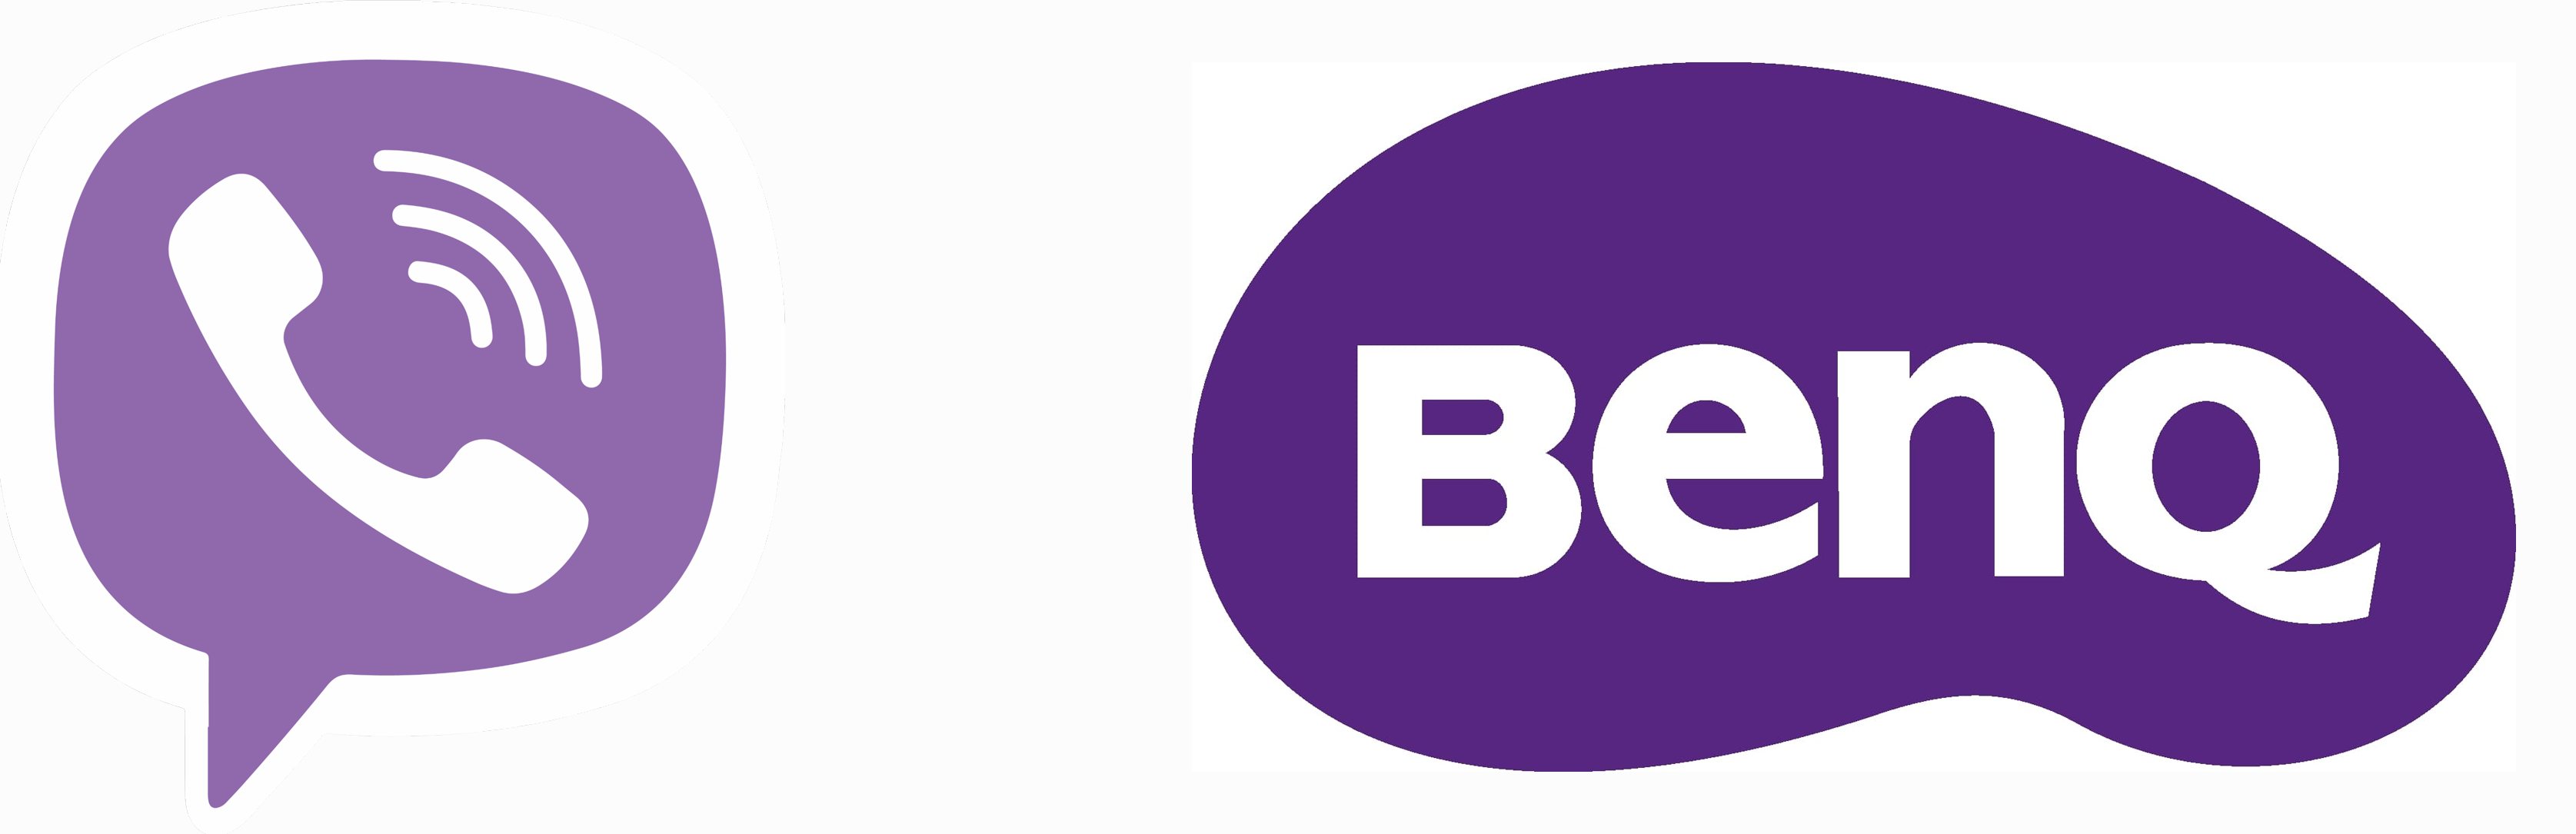 Логотипы мессенджера Viber и производителя компьютерной техники BenQ